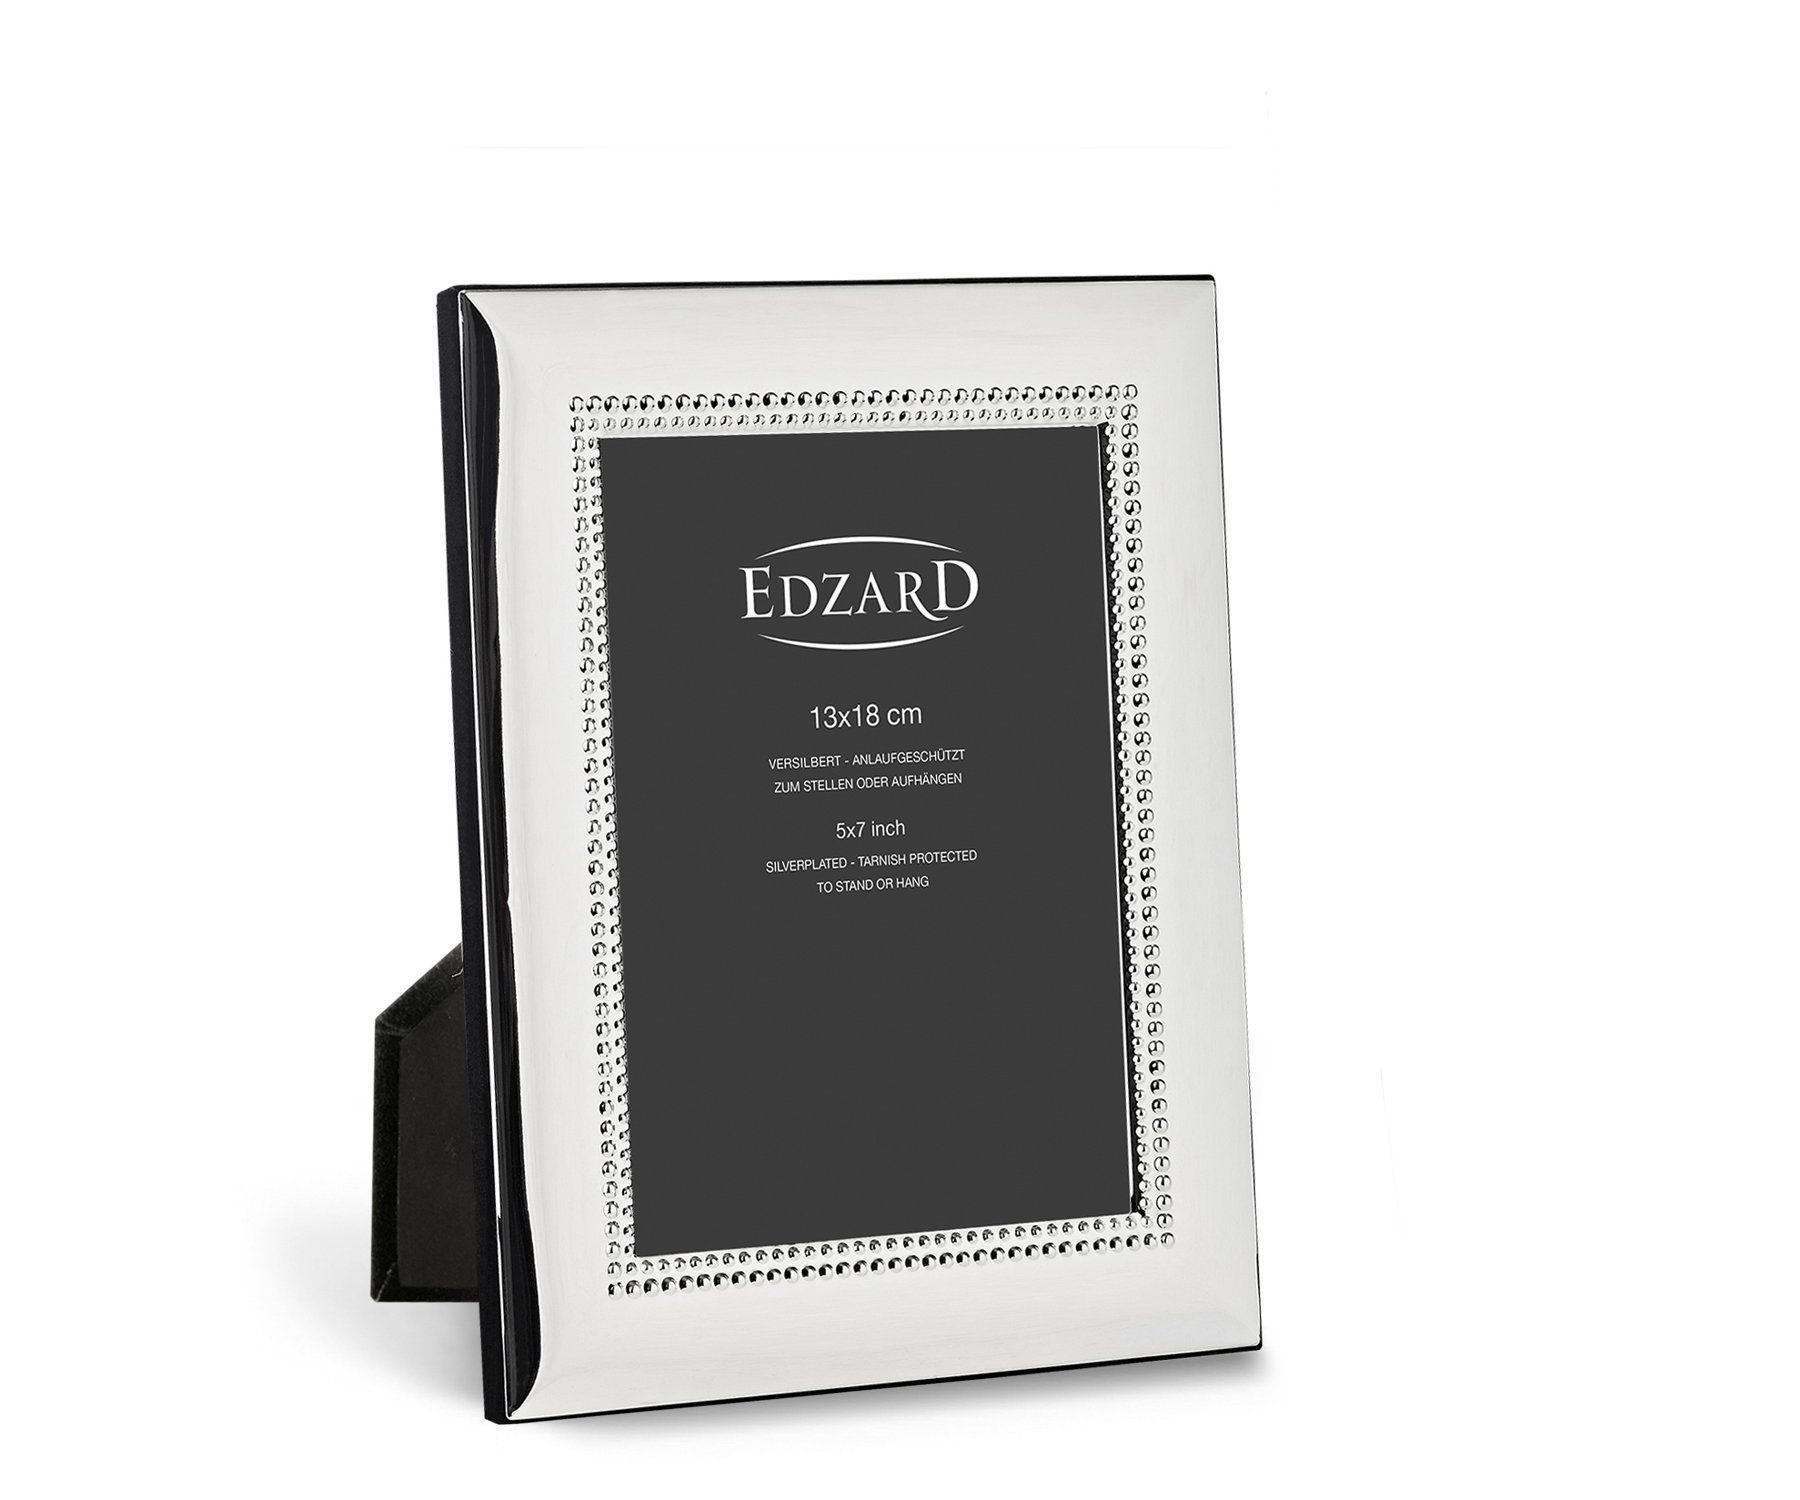 EDZARD Bilderrahmen Turin, edel versilbert und anlaufgeschützt, für 13x18 cm Fotos